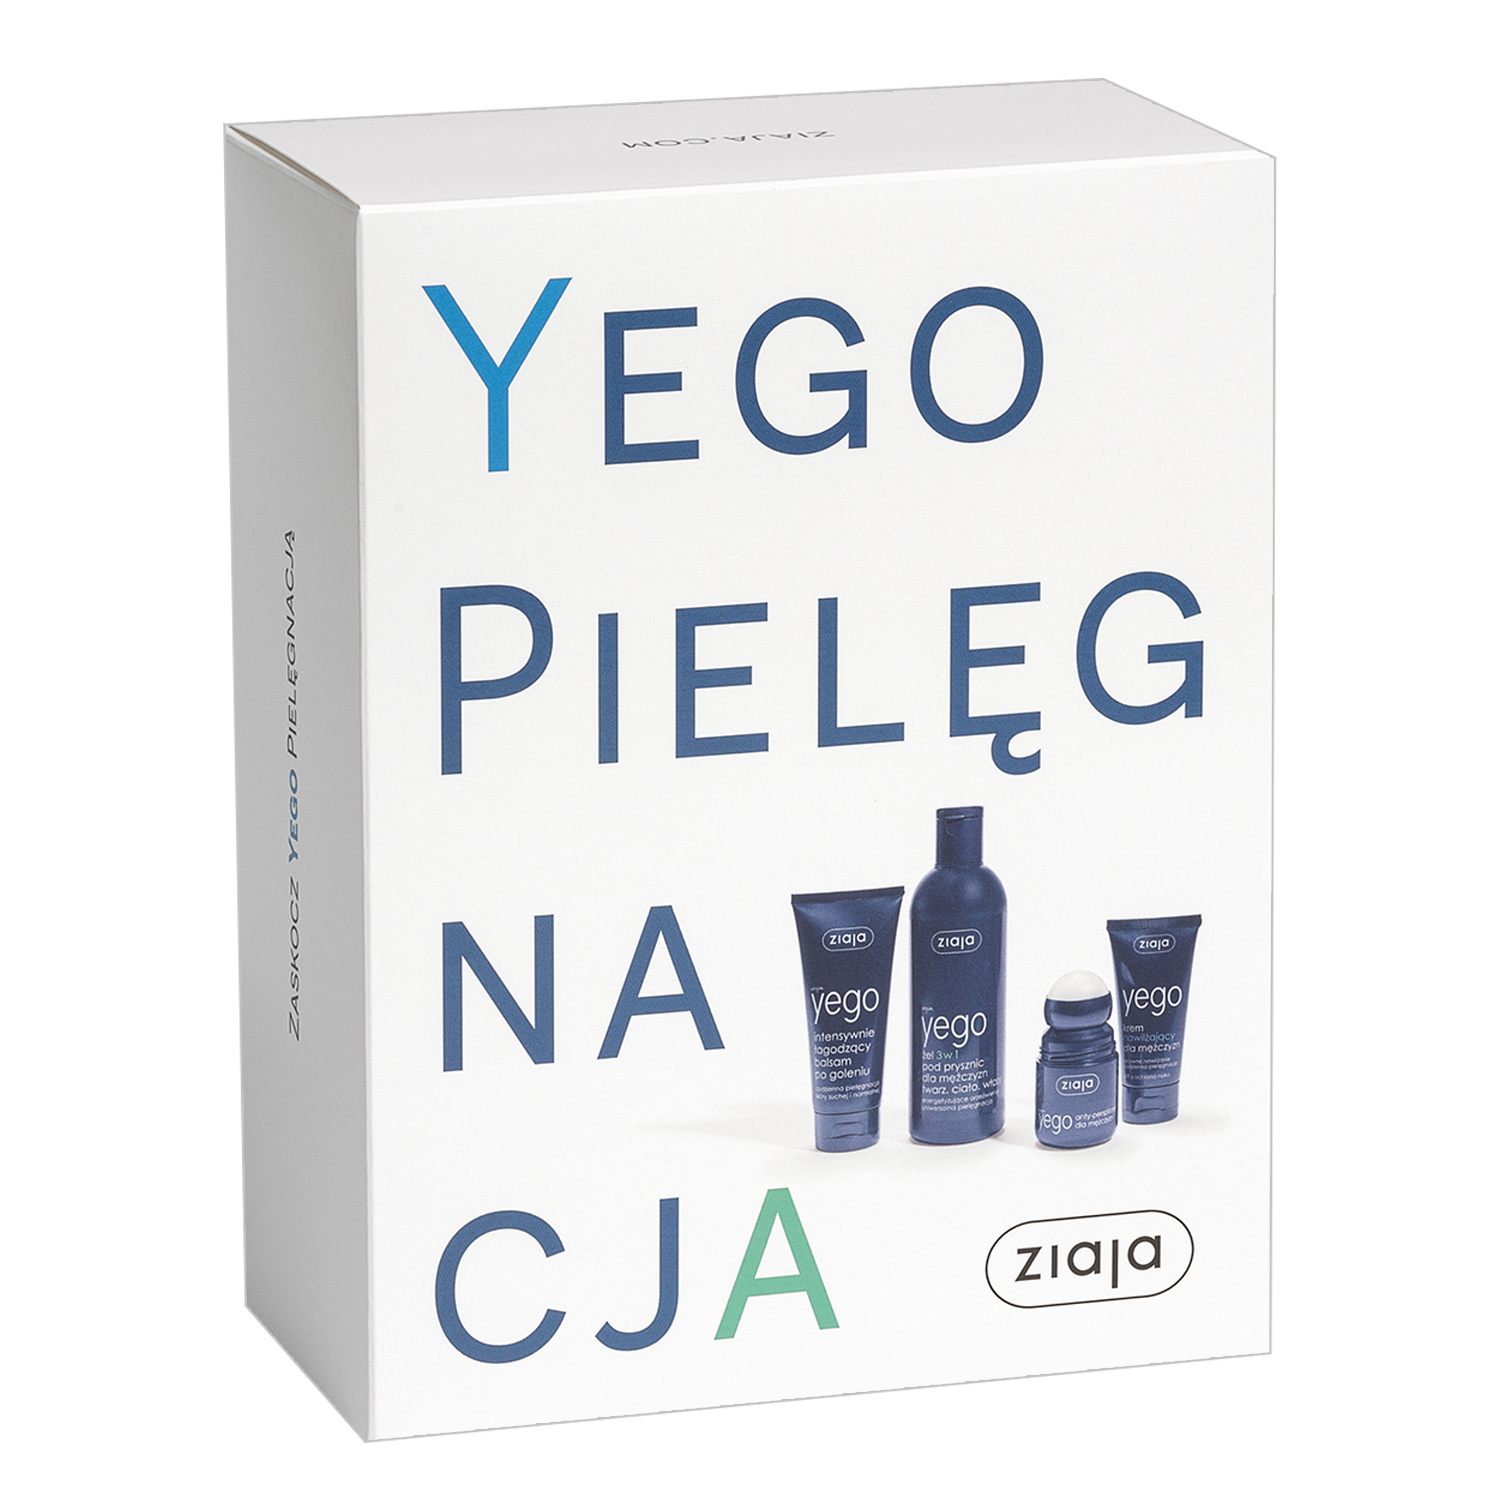 https www.aptekagemini.pl ziaja-yego-szampon-300ml.html